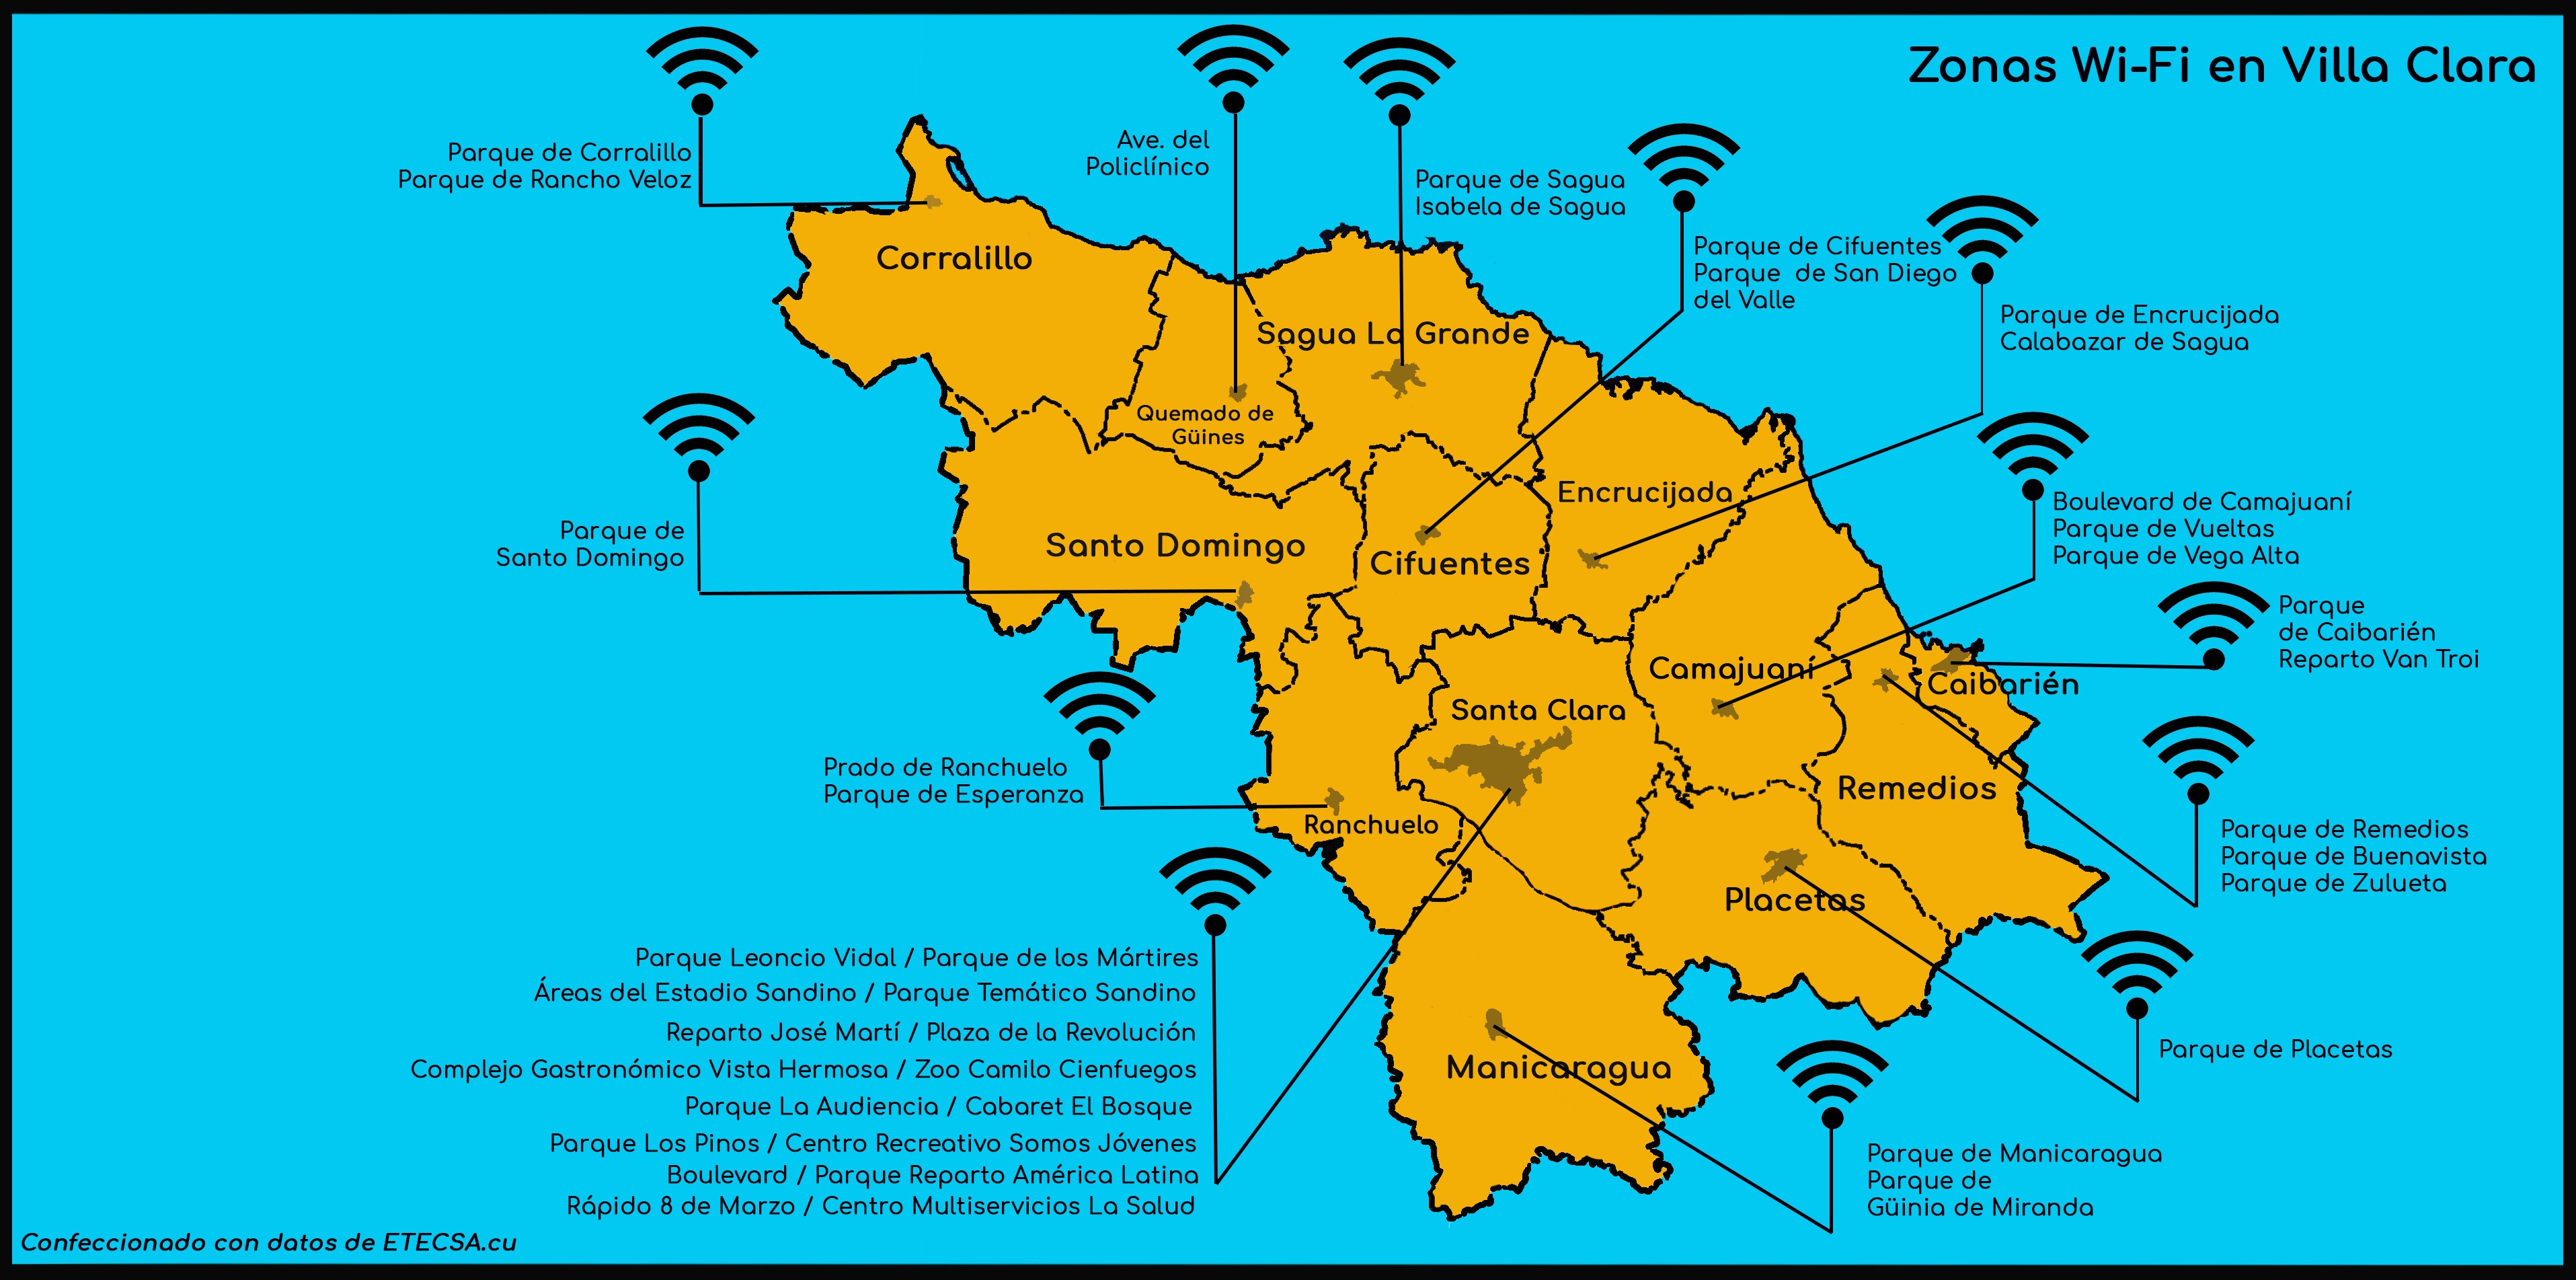 Infografía de las zonas WiFi de la provincia Villa Clara, Cuba.